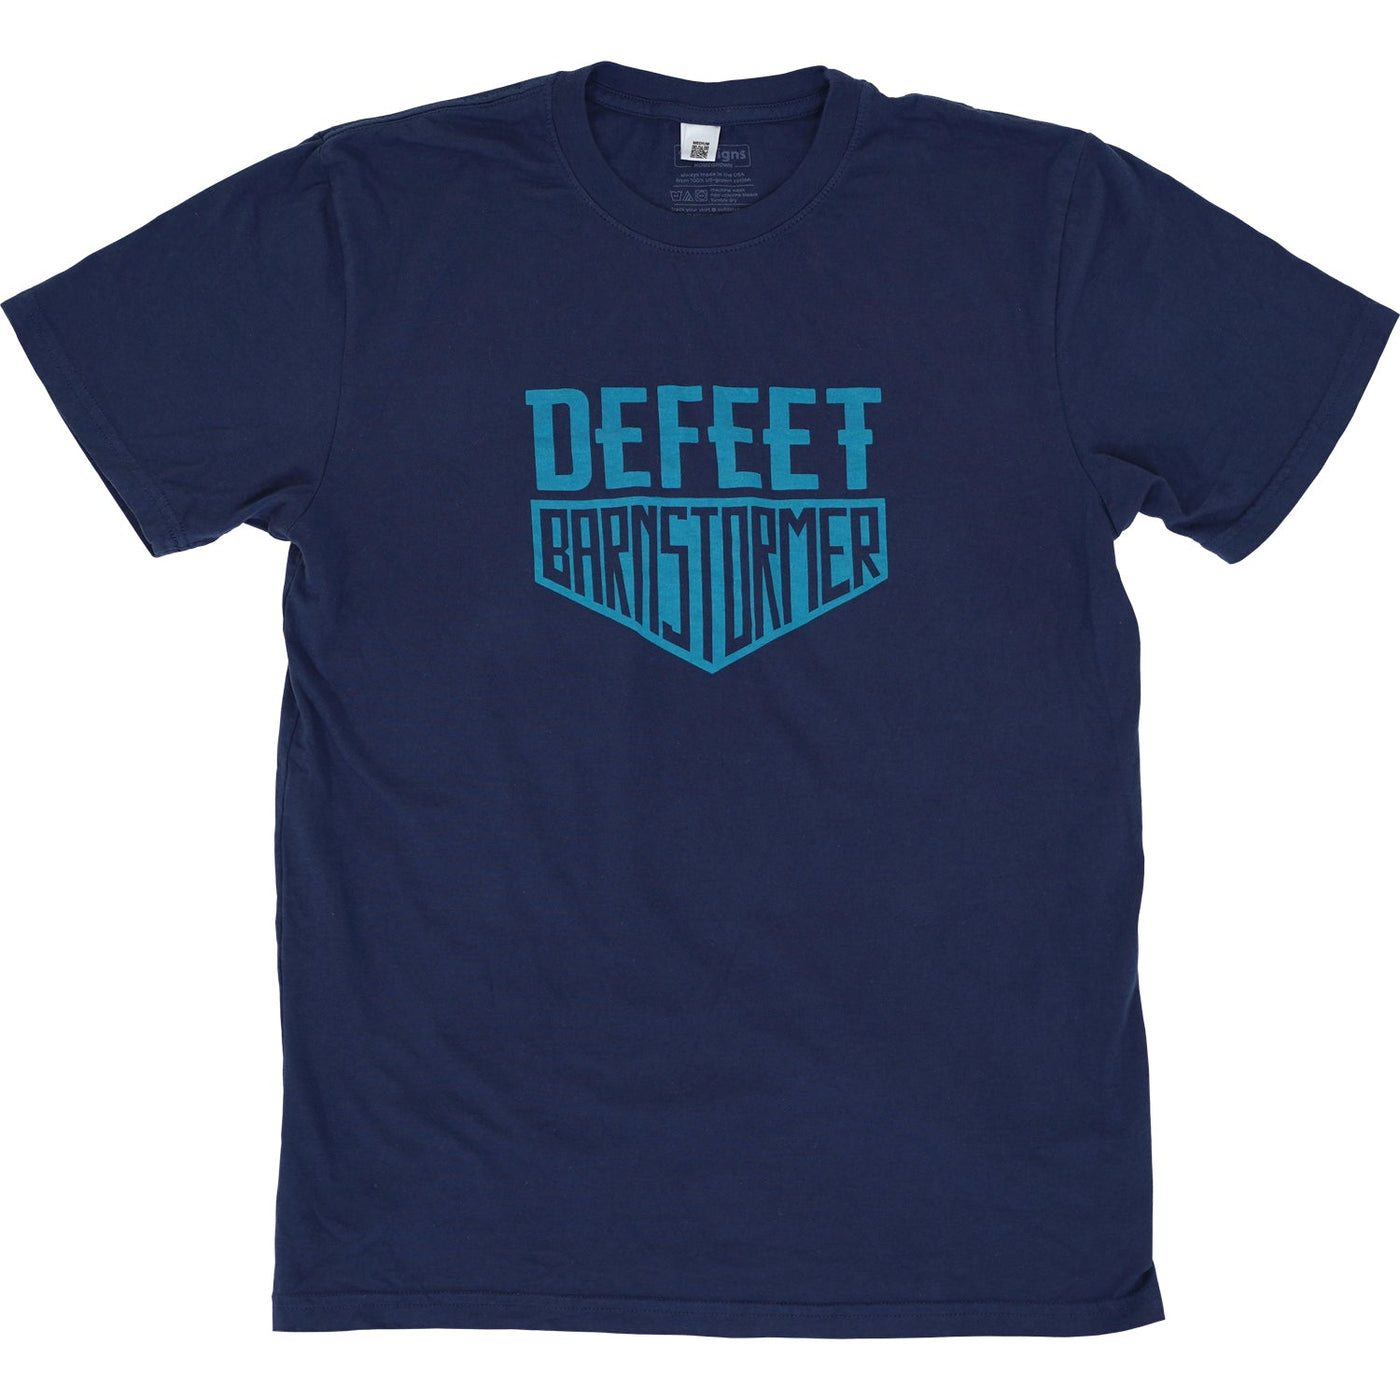 DeFeet Barnstormer T-Shirt (Navy) - DeFeet